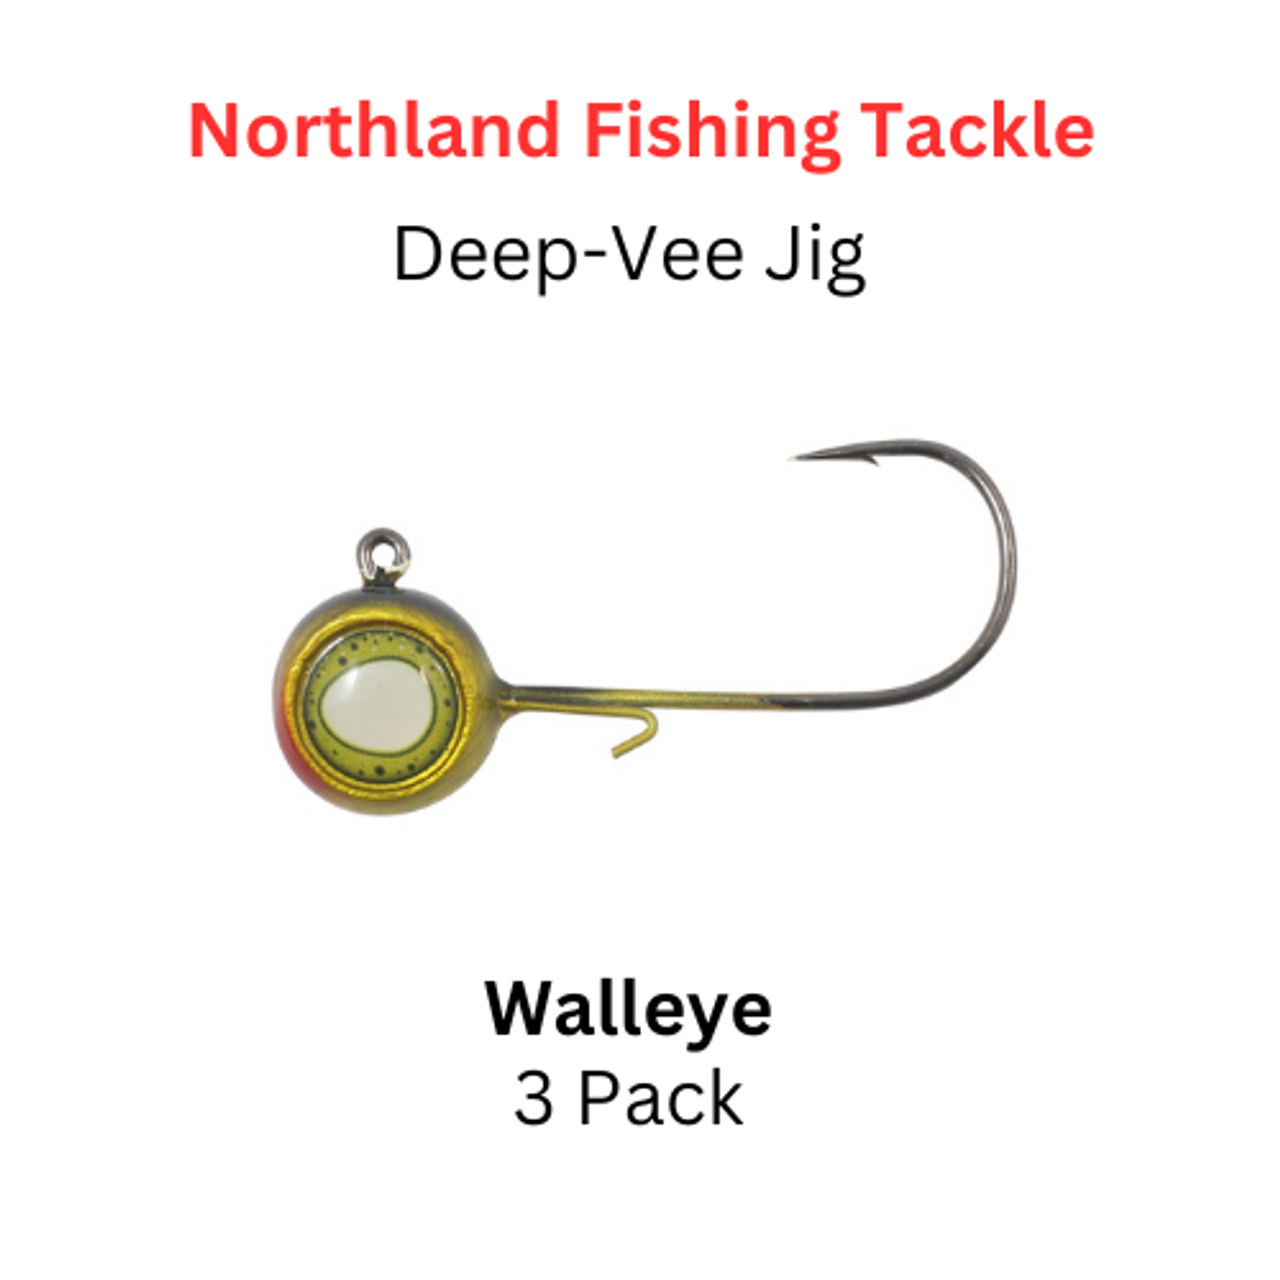 NORTHLAND FISHING TACKLE: 1/8 oz deep-vee jig walleye